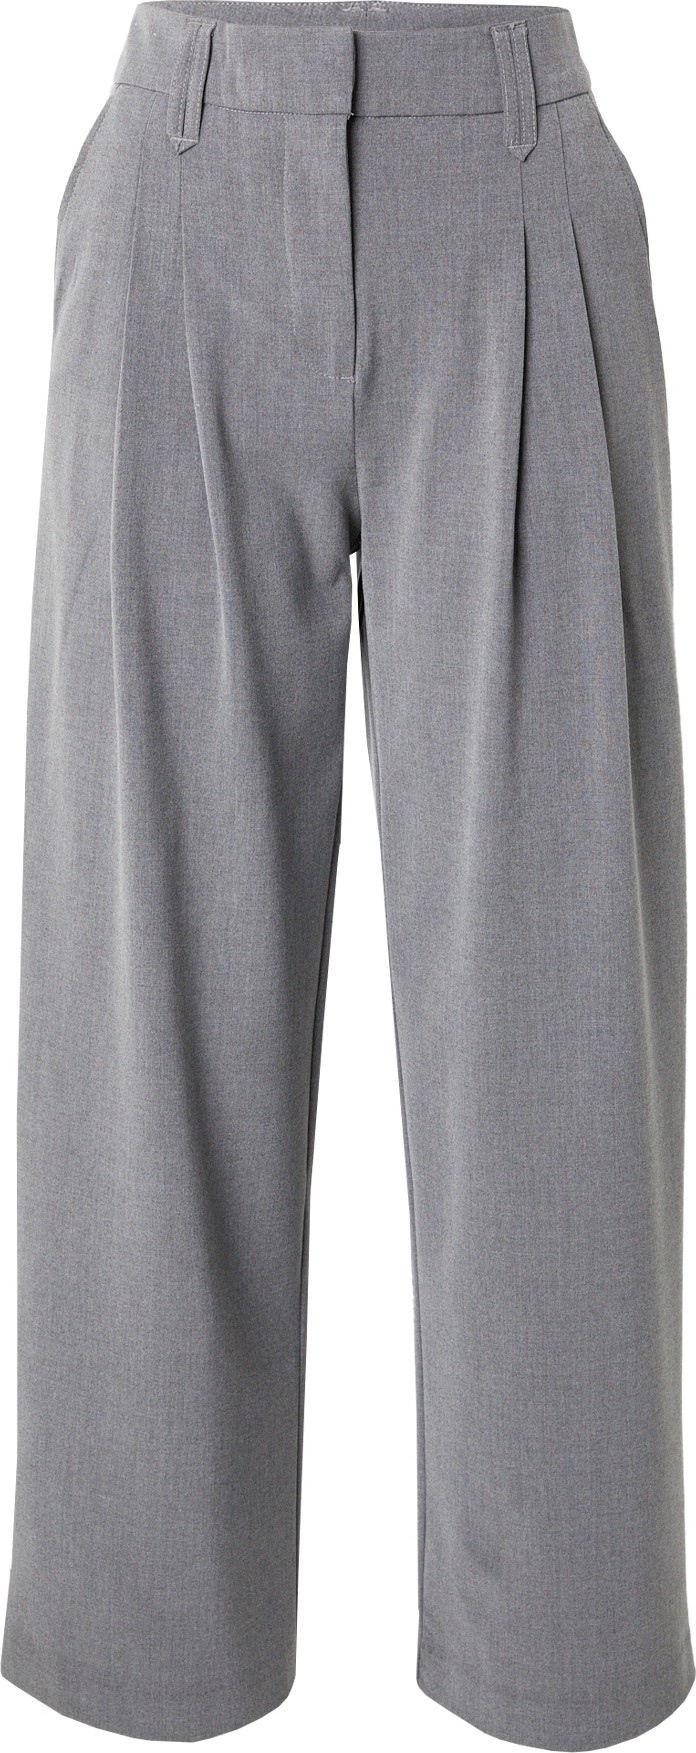 Kalhoty se sklady v pase 'Bennora' moss copenhagen šedý melír